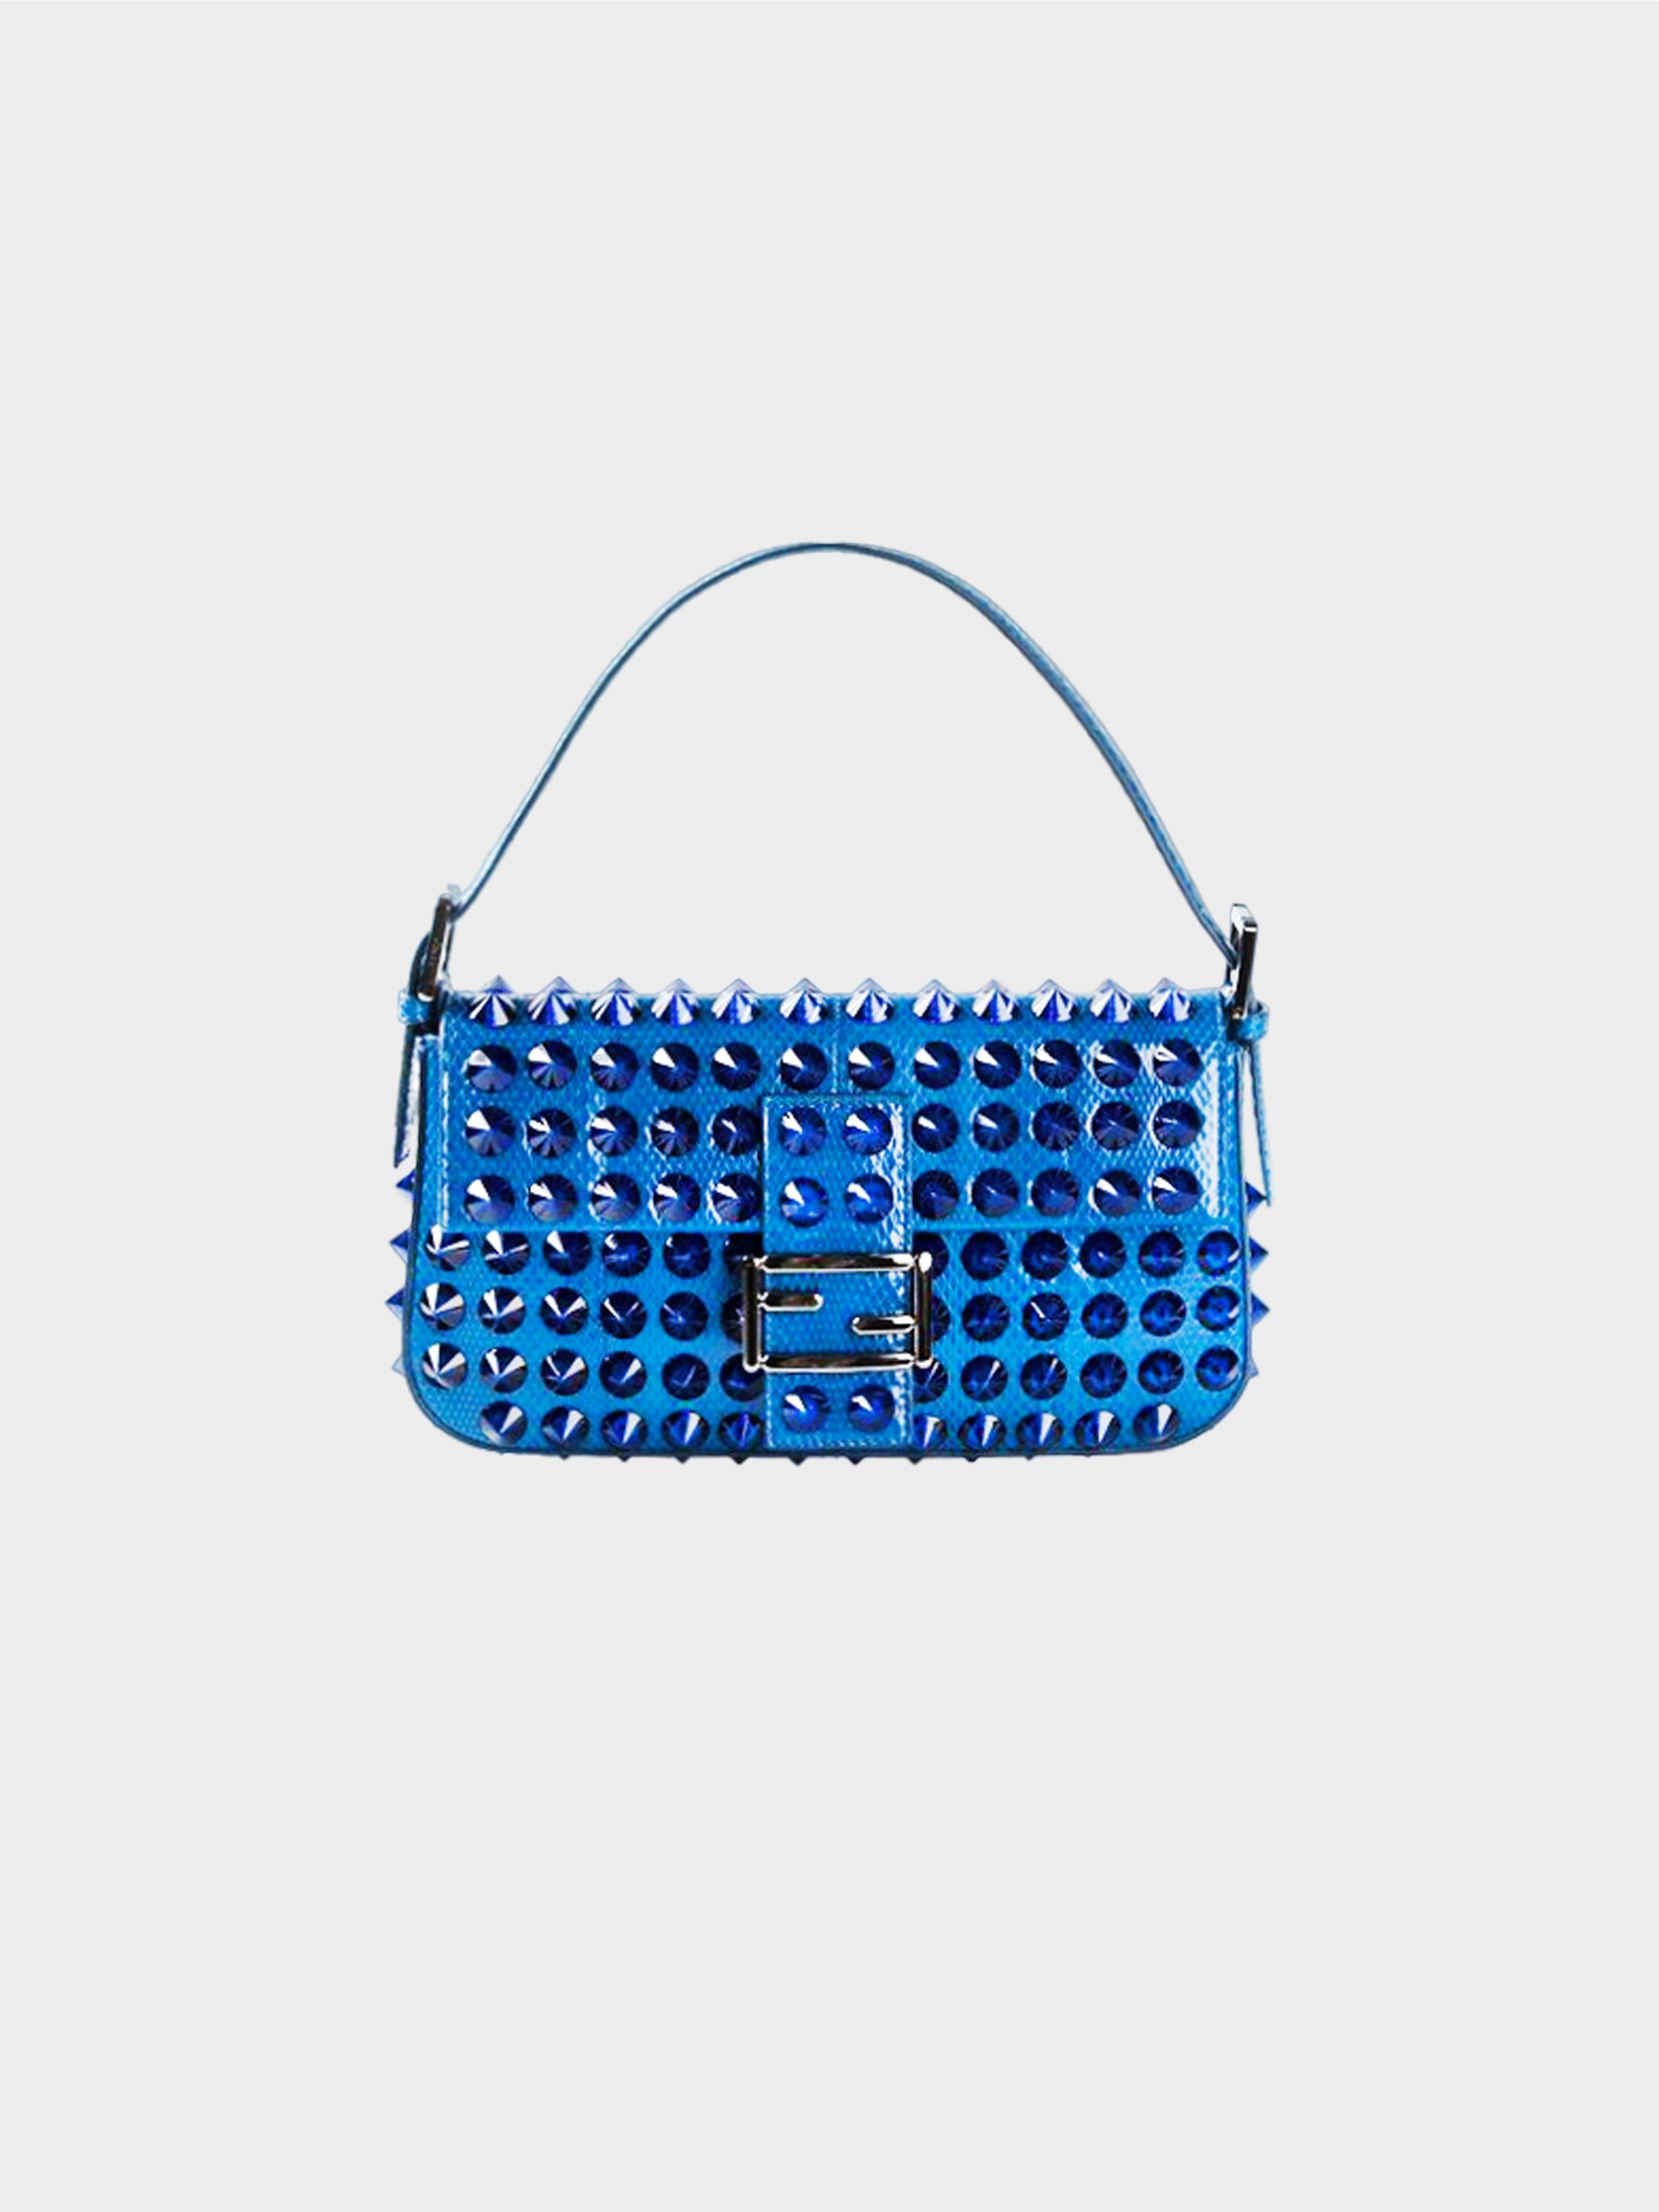 Fendi 2015 Blue Rare Snakeskin Studded Leather Baguette Bag